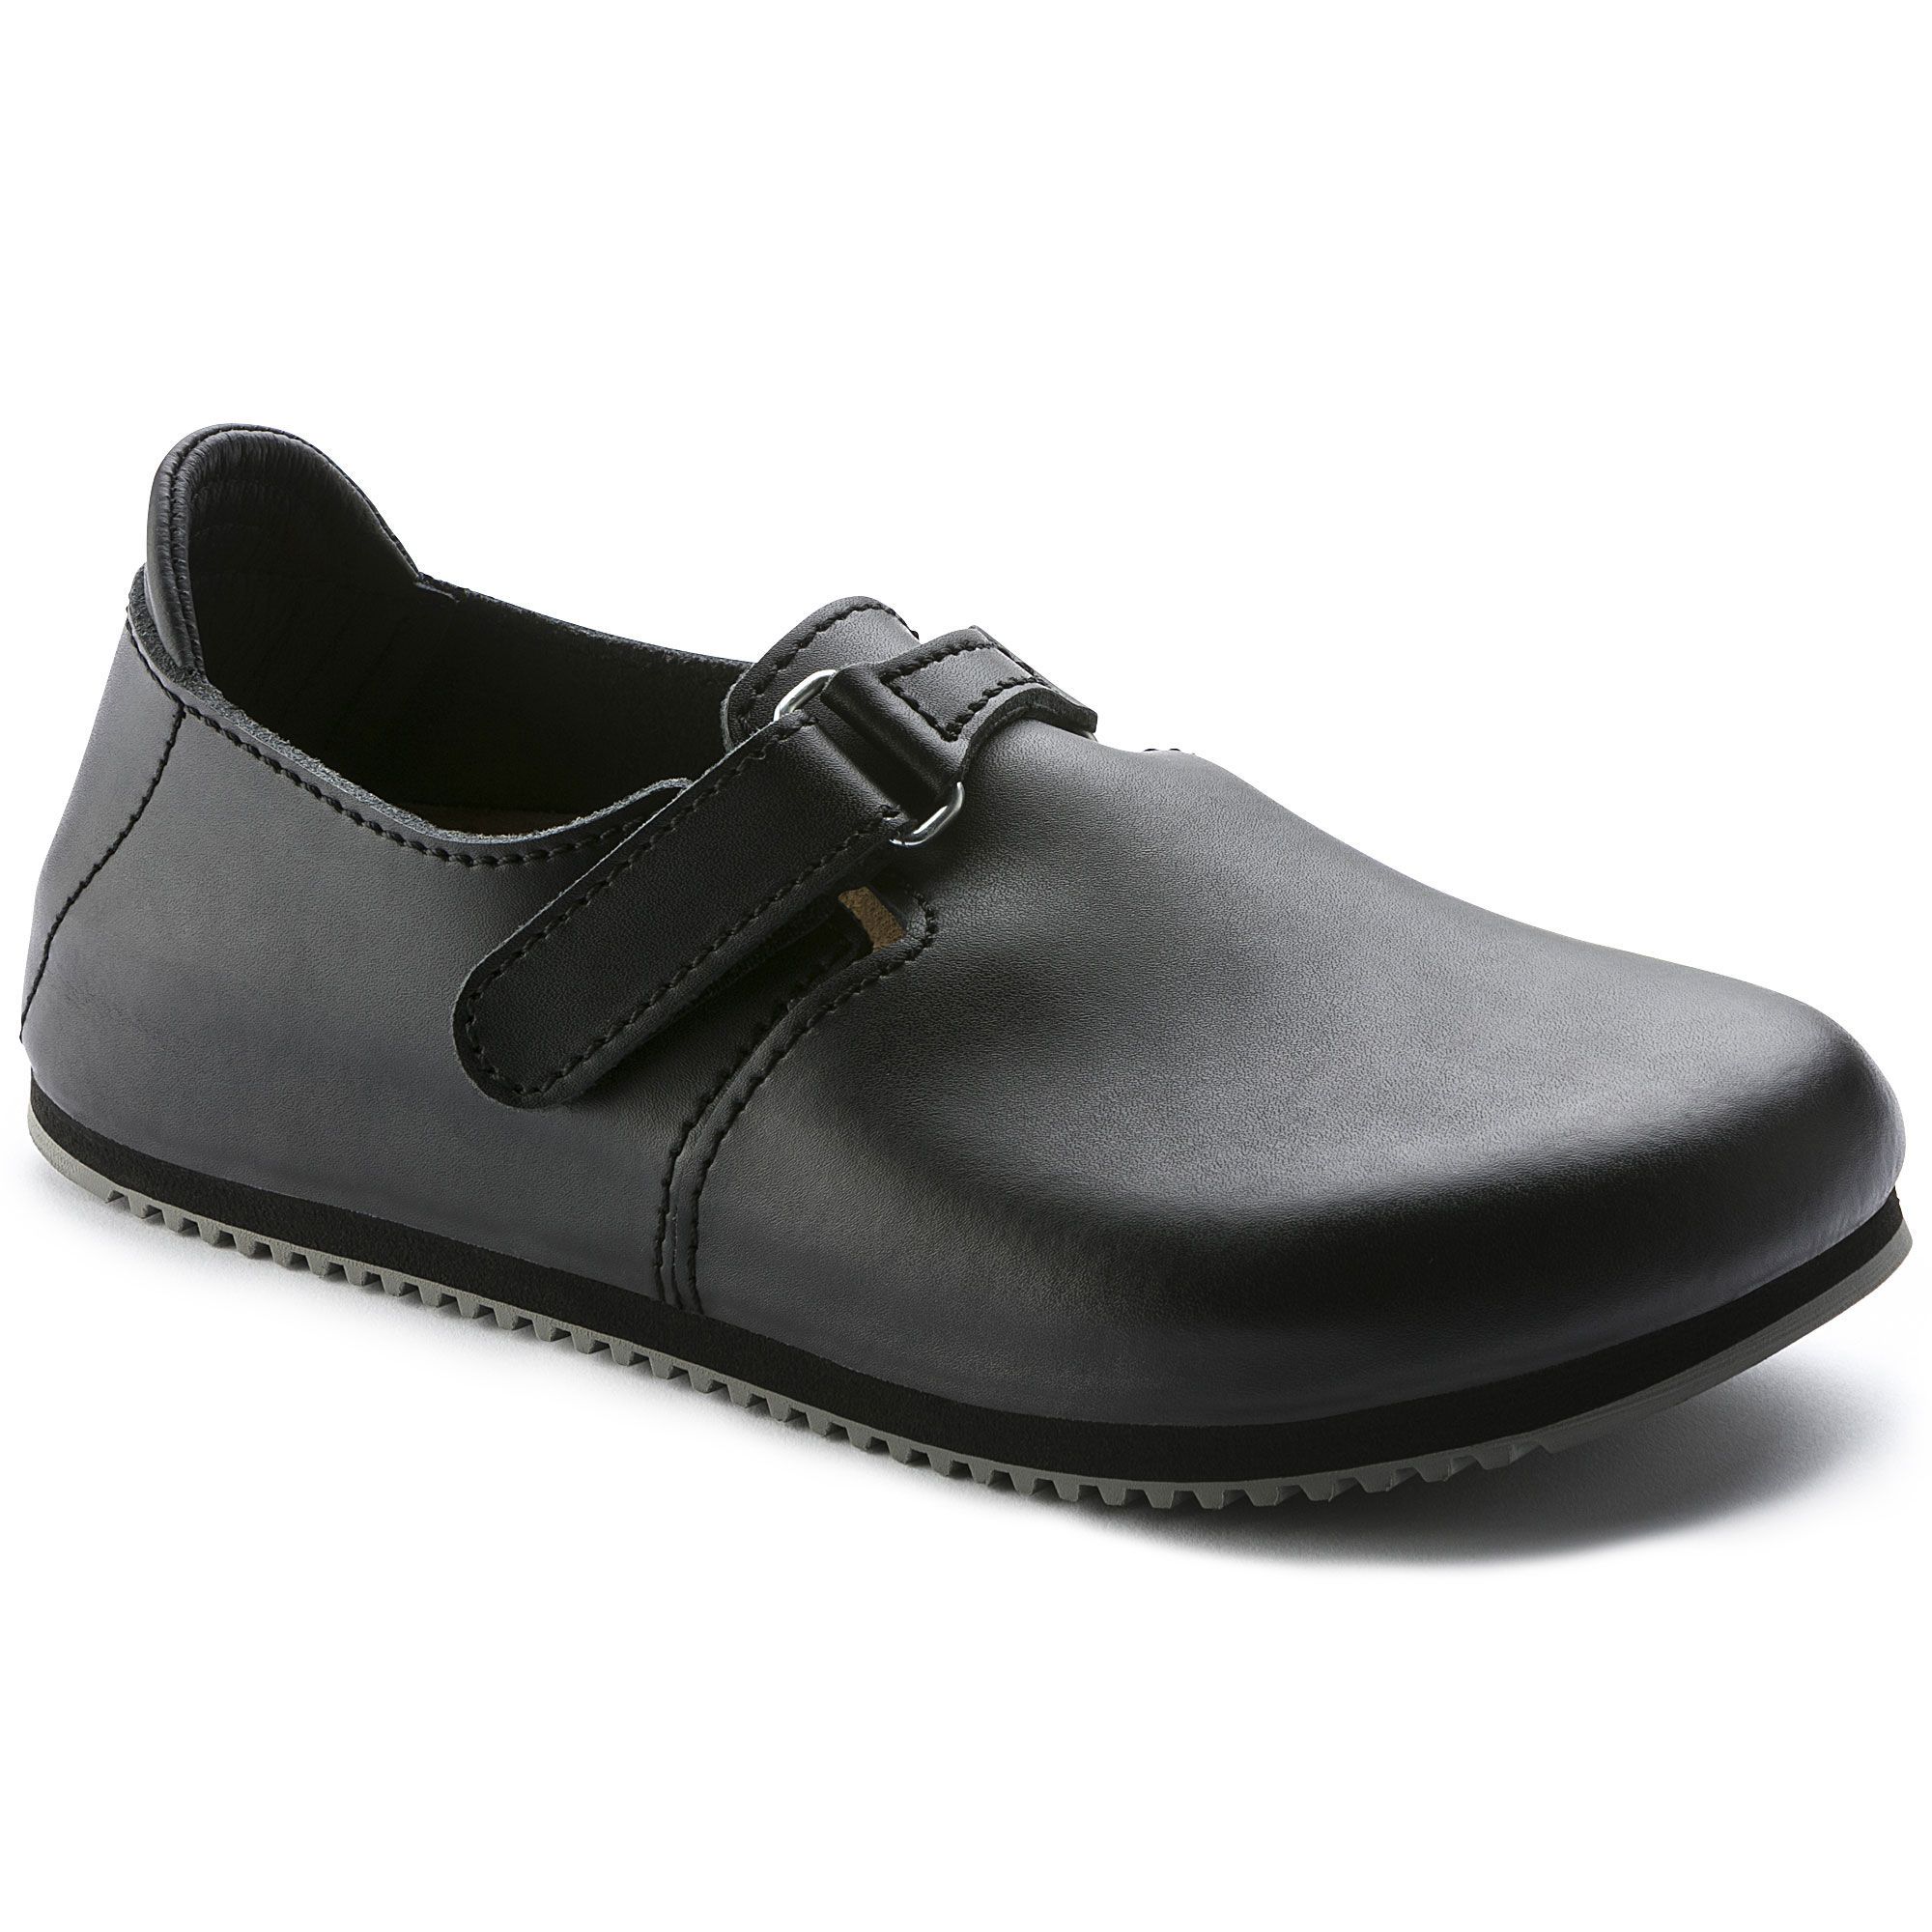 Birkenstock Professional, Linz SL, Super Grip Sole Leather Regular Fit, Black Shoes Birkenstock Professional Black 42 